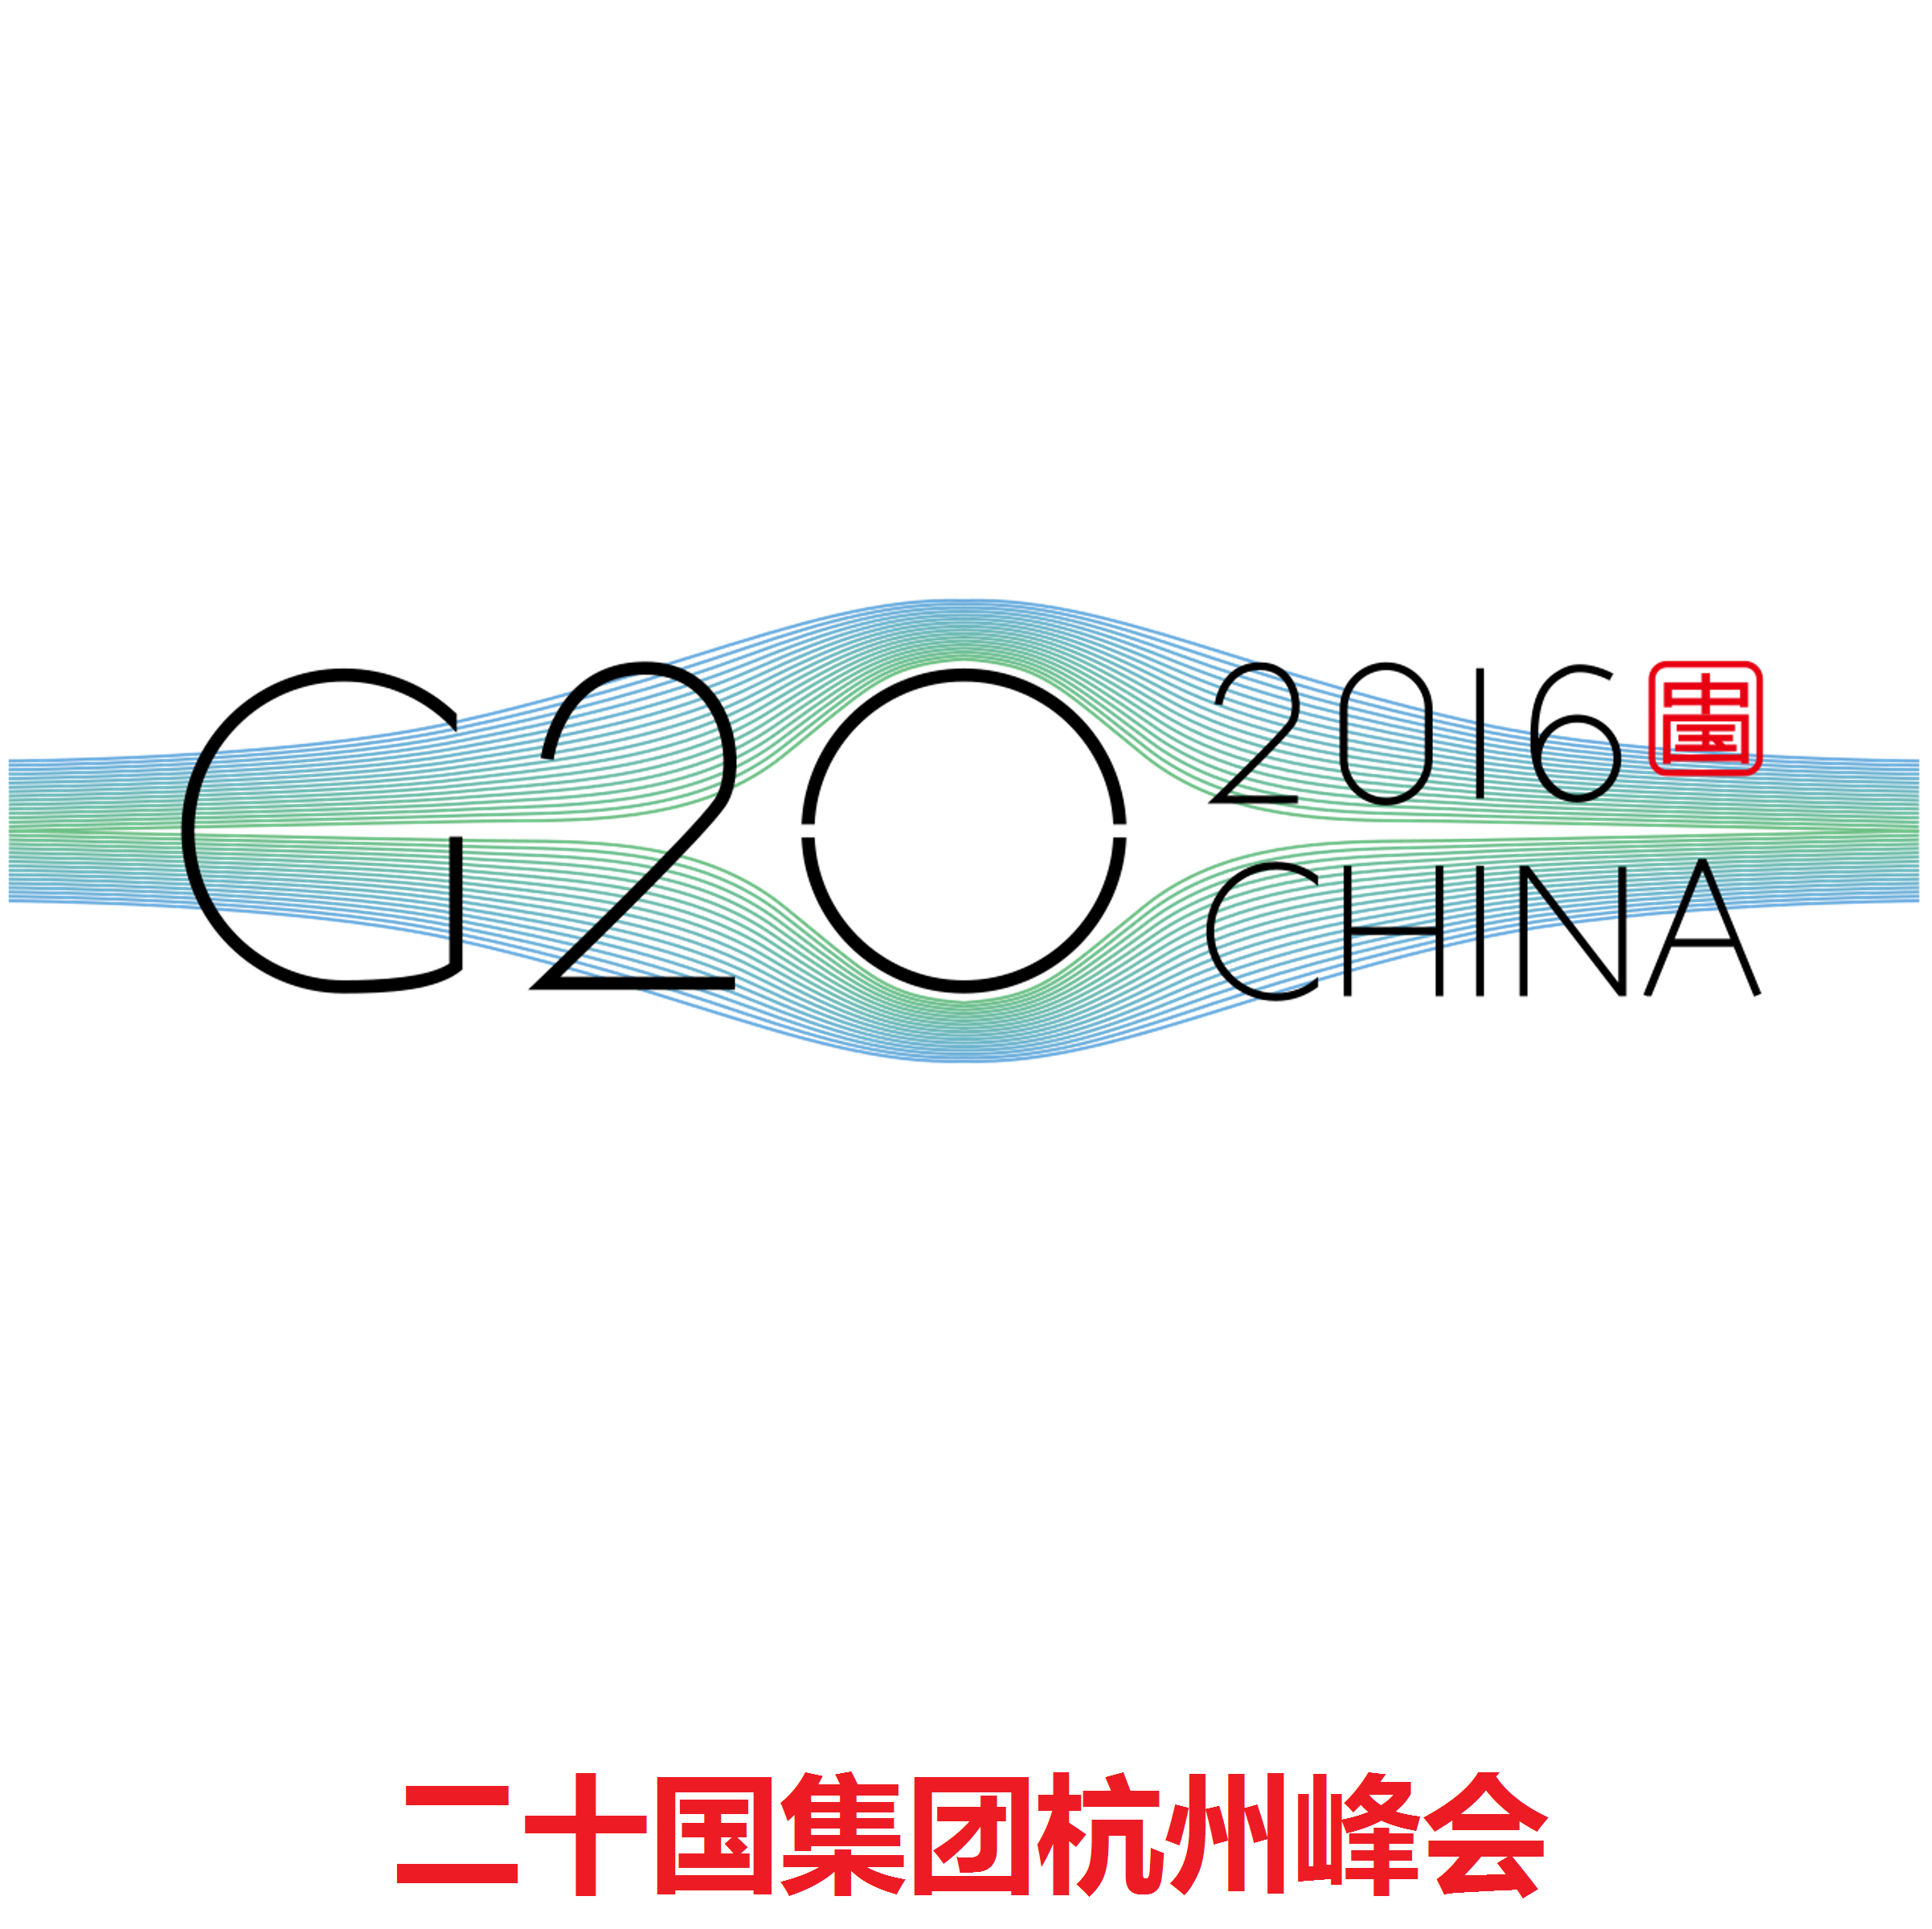 杭州G20